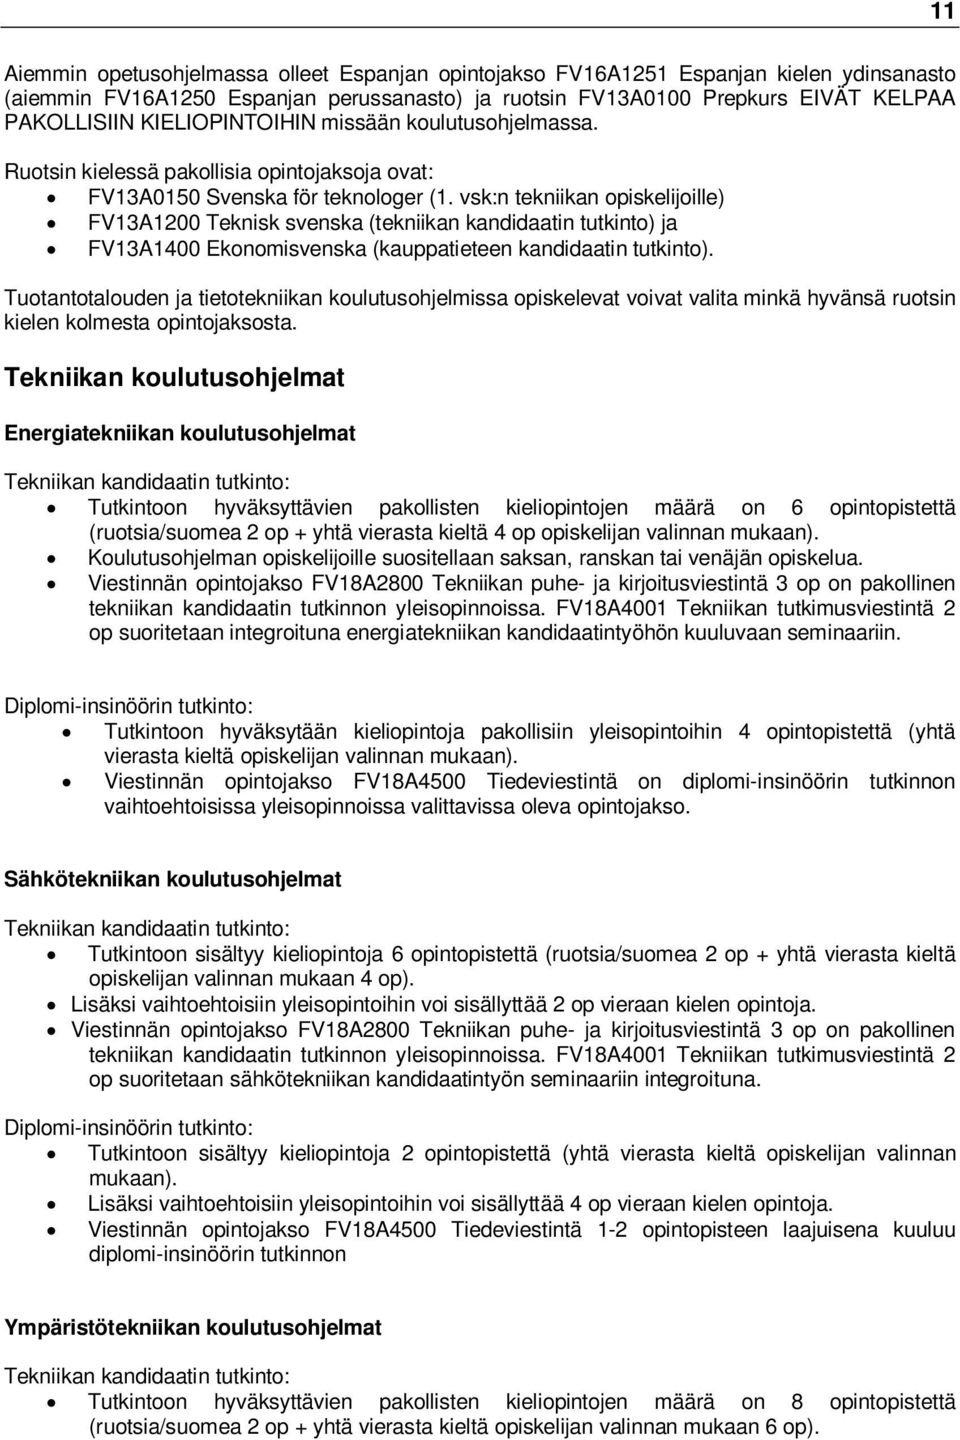 vsk:n tekniikan opiskelijoille) FV13A1200 Teknisk svenska (tekniikan kandidaatin tutkinto) ja FV13A1400 Ekonomisvenska (kauppatieteen kandidaatin tutkinto).